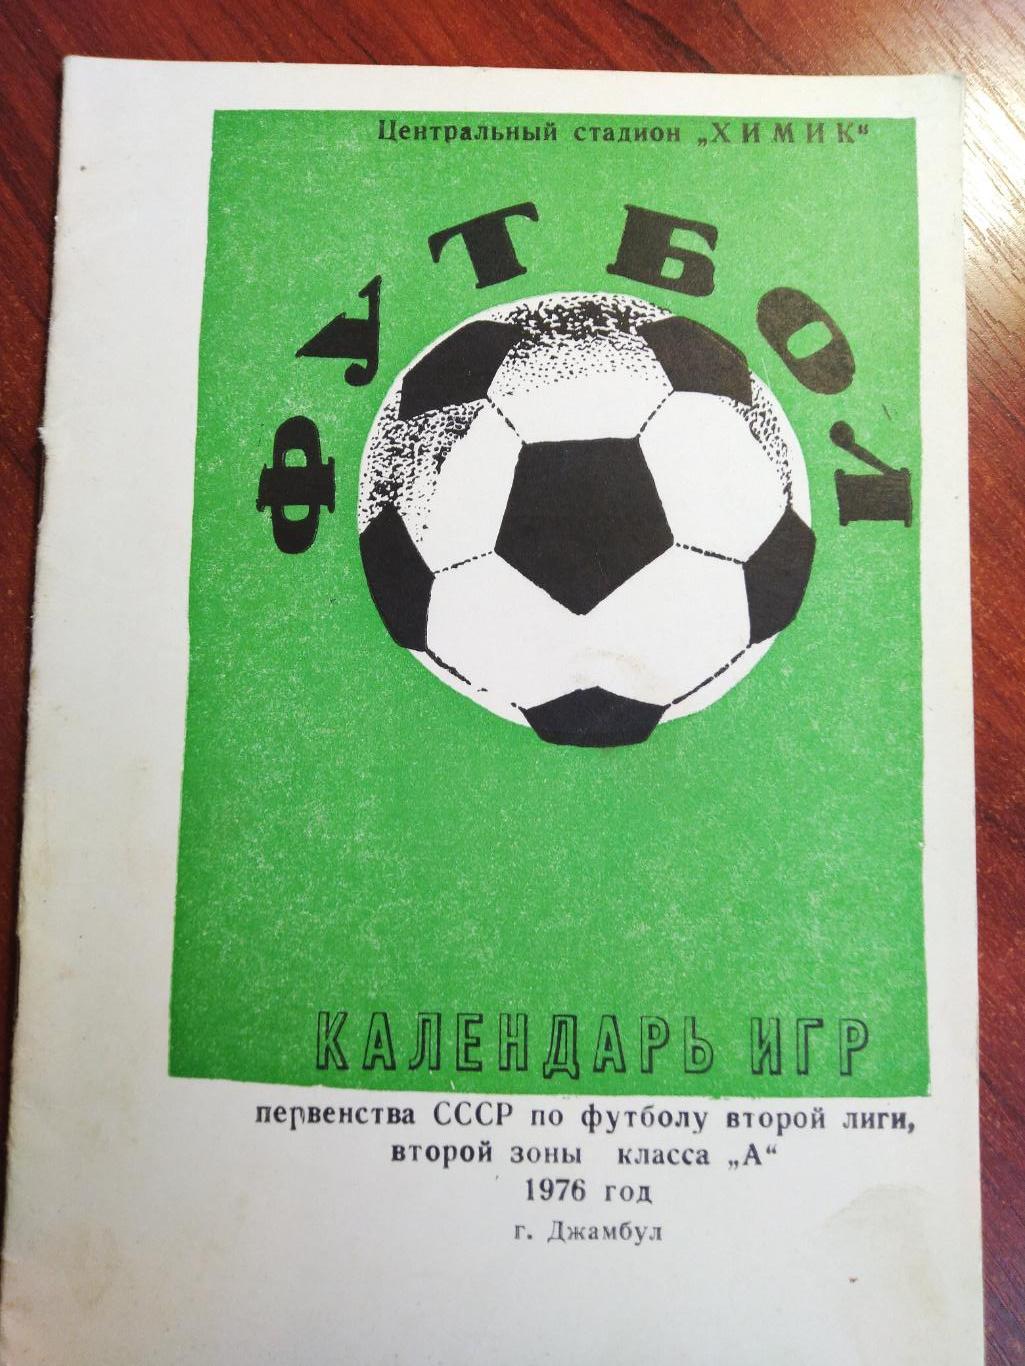 Справочник -календарь Футбол 1976 Химик Джамбул